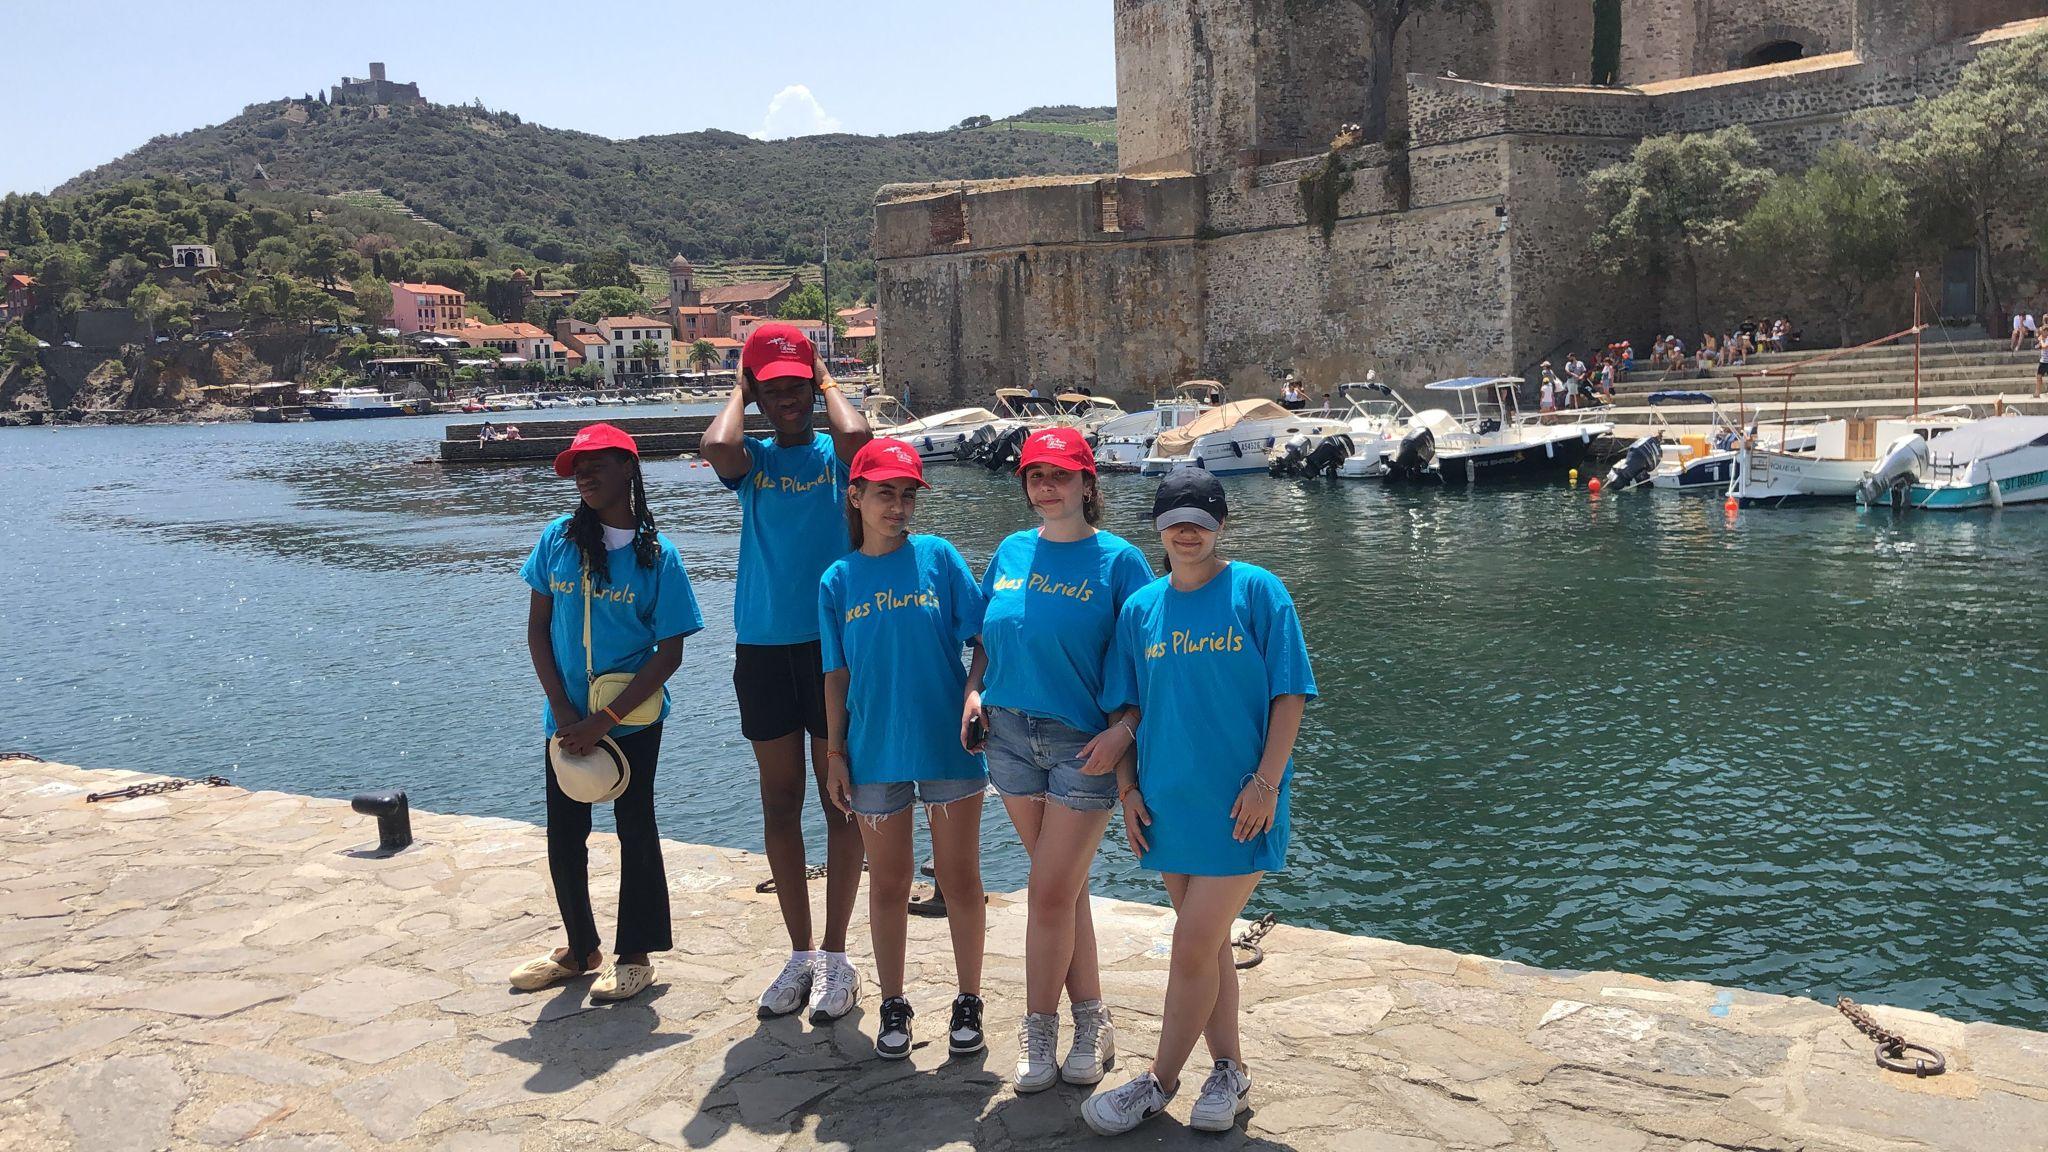 Adolescents de l’association en séjour à Argelès-sur-Mer pour découvrir les éco systèmes maritimes, faire des randonnées et s’ouvrir en rencontrant d’autres jeunes.